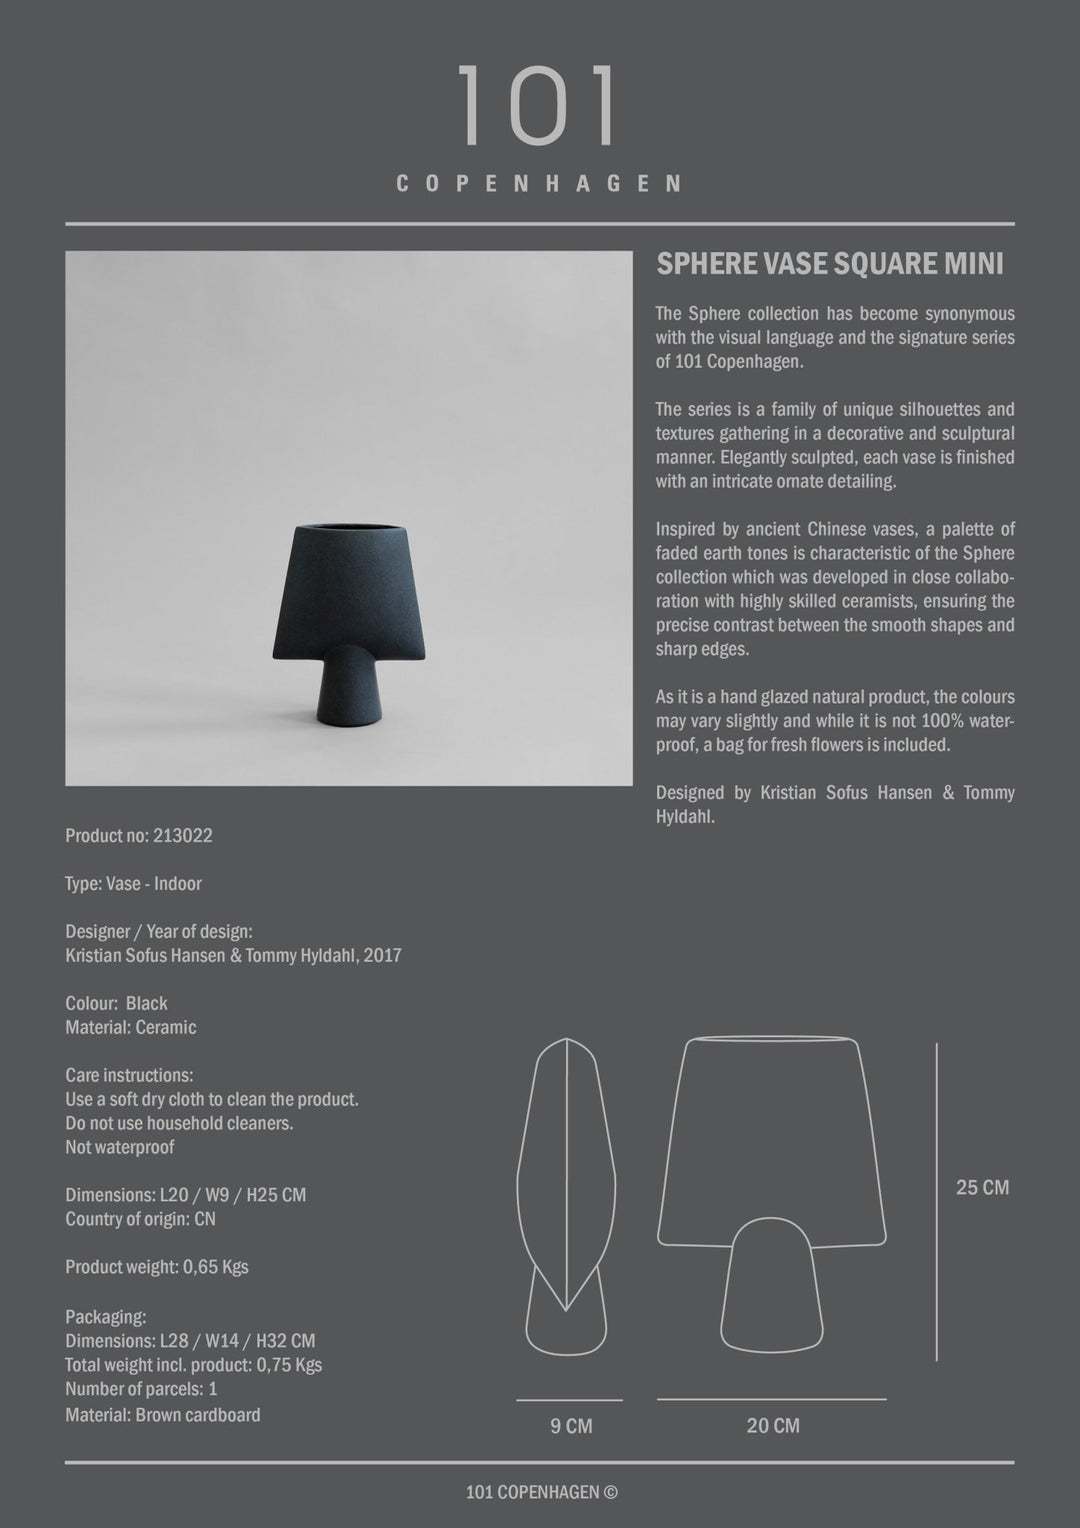 101 Copenhagen Sphere Vase Square, Mini - $95.00